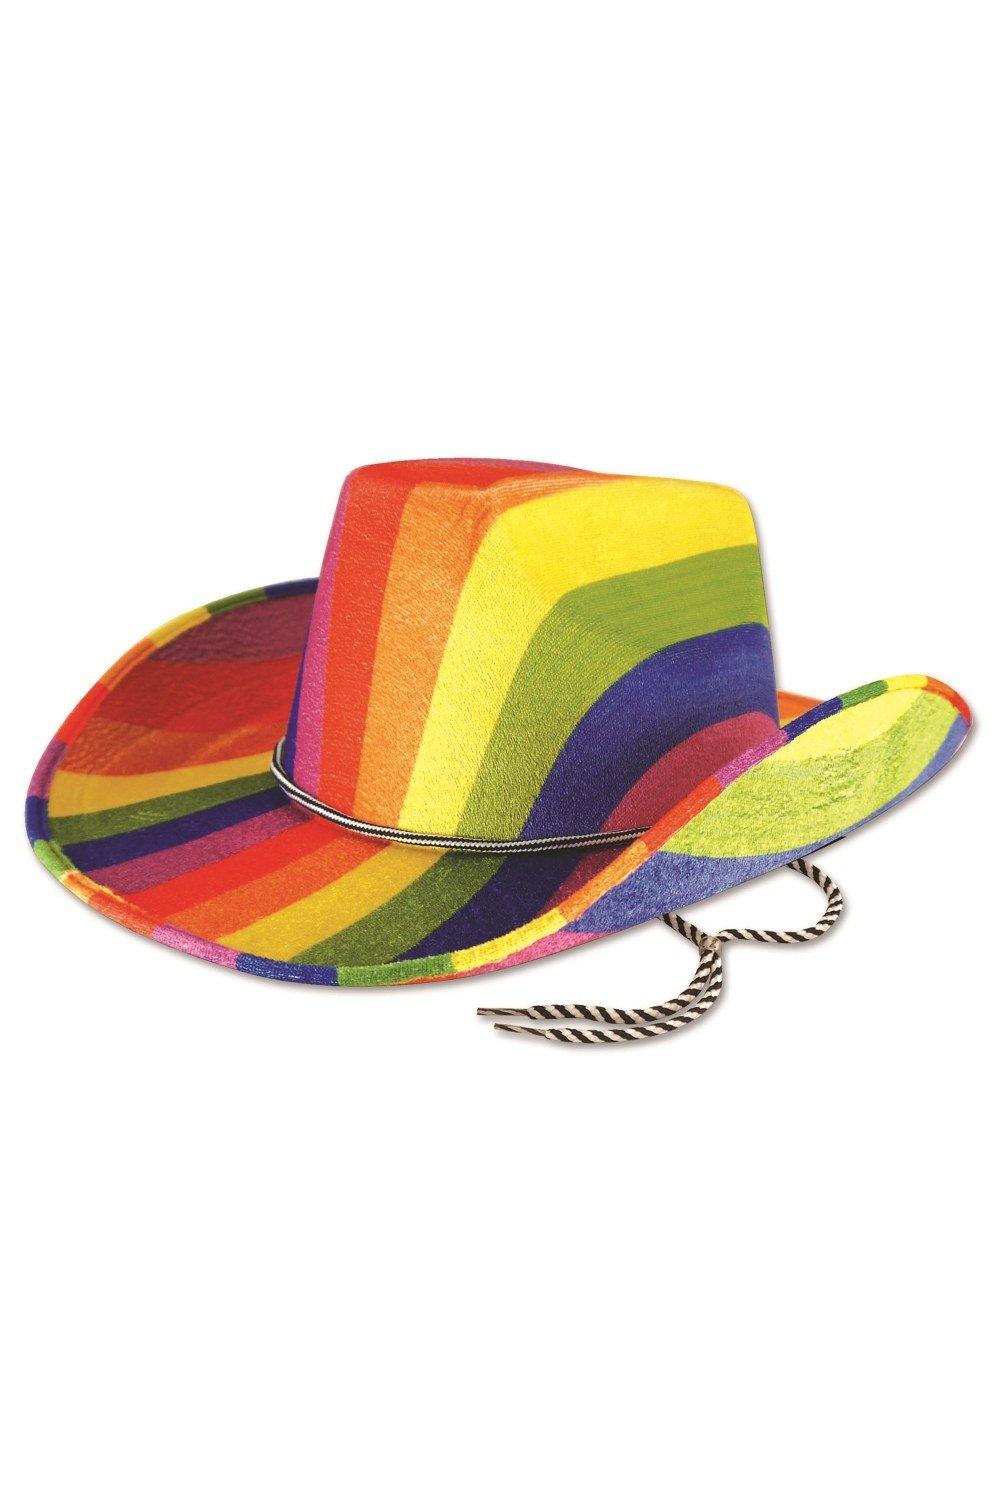 Радужная ковбойская шляпа Bristol Novelty, мультиколор 20 шт мини аксессуары мини ковбойская шляпа крошечная ковбойская шляпа декоративная мини шляпа мини домашний реквизит